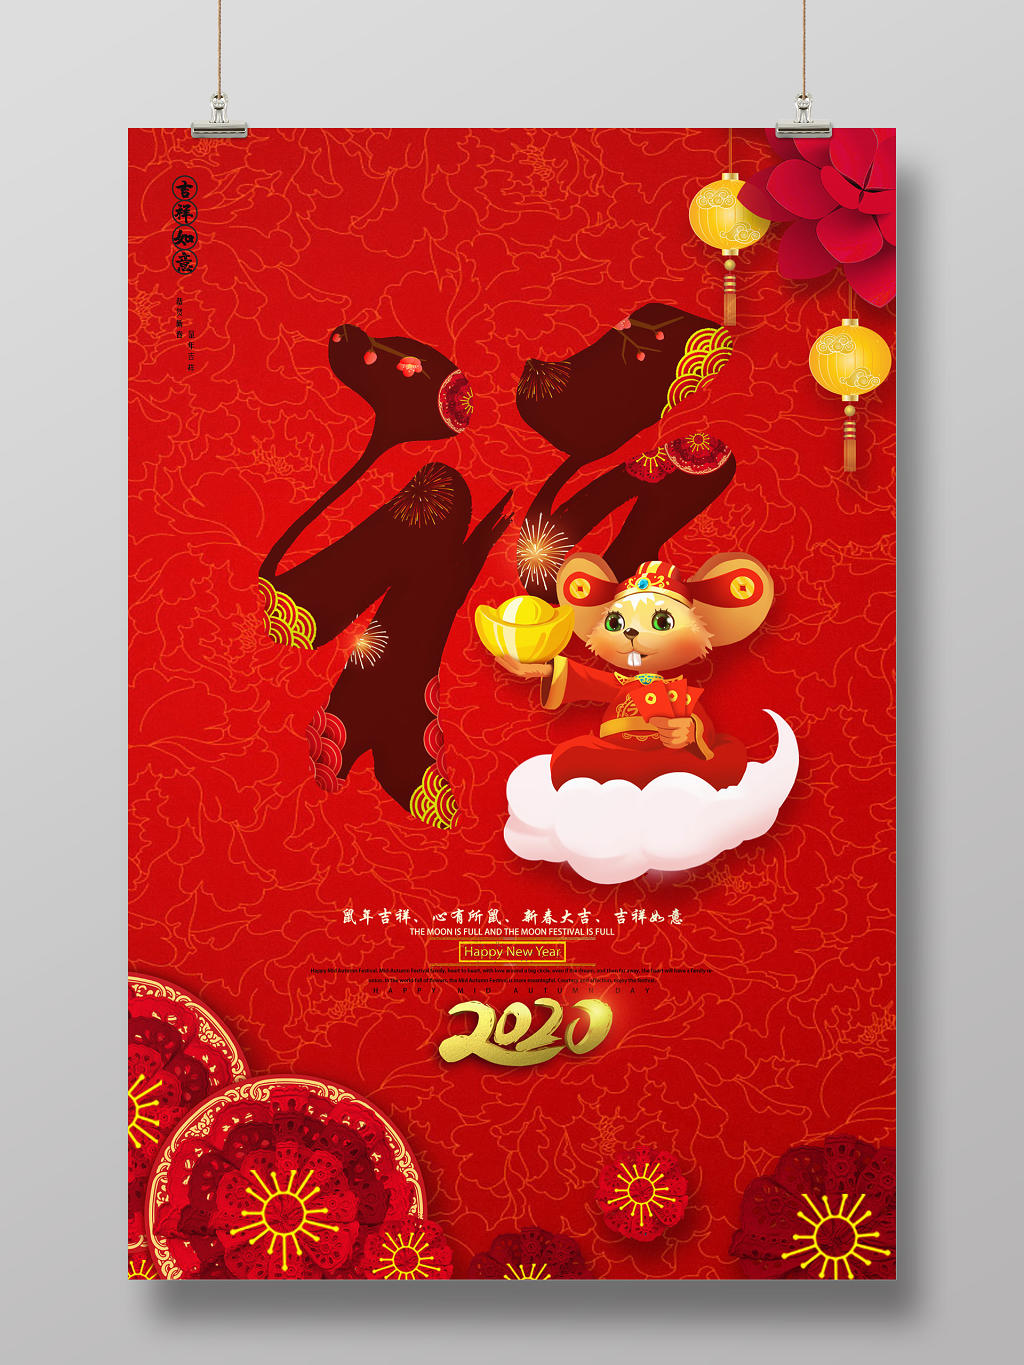 鼠年红色纹底2020福字新年海报鼠年福字